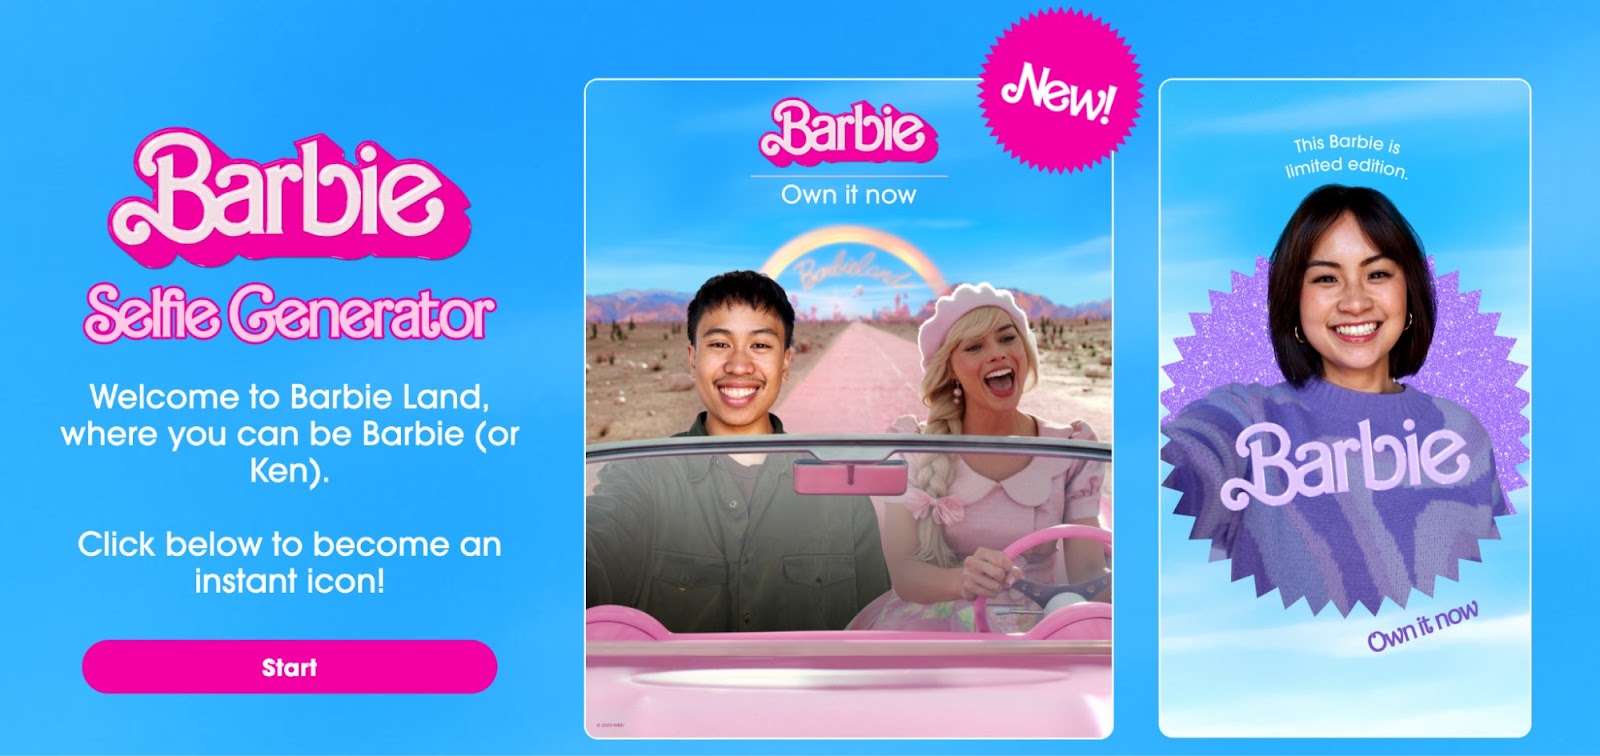 Warner Bros.’ and PhotoRoom’s Barbie Selfie campaign filter